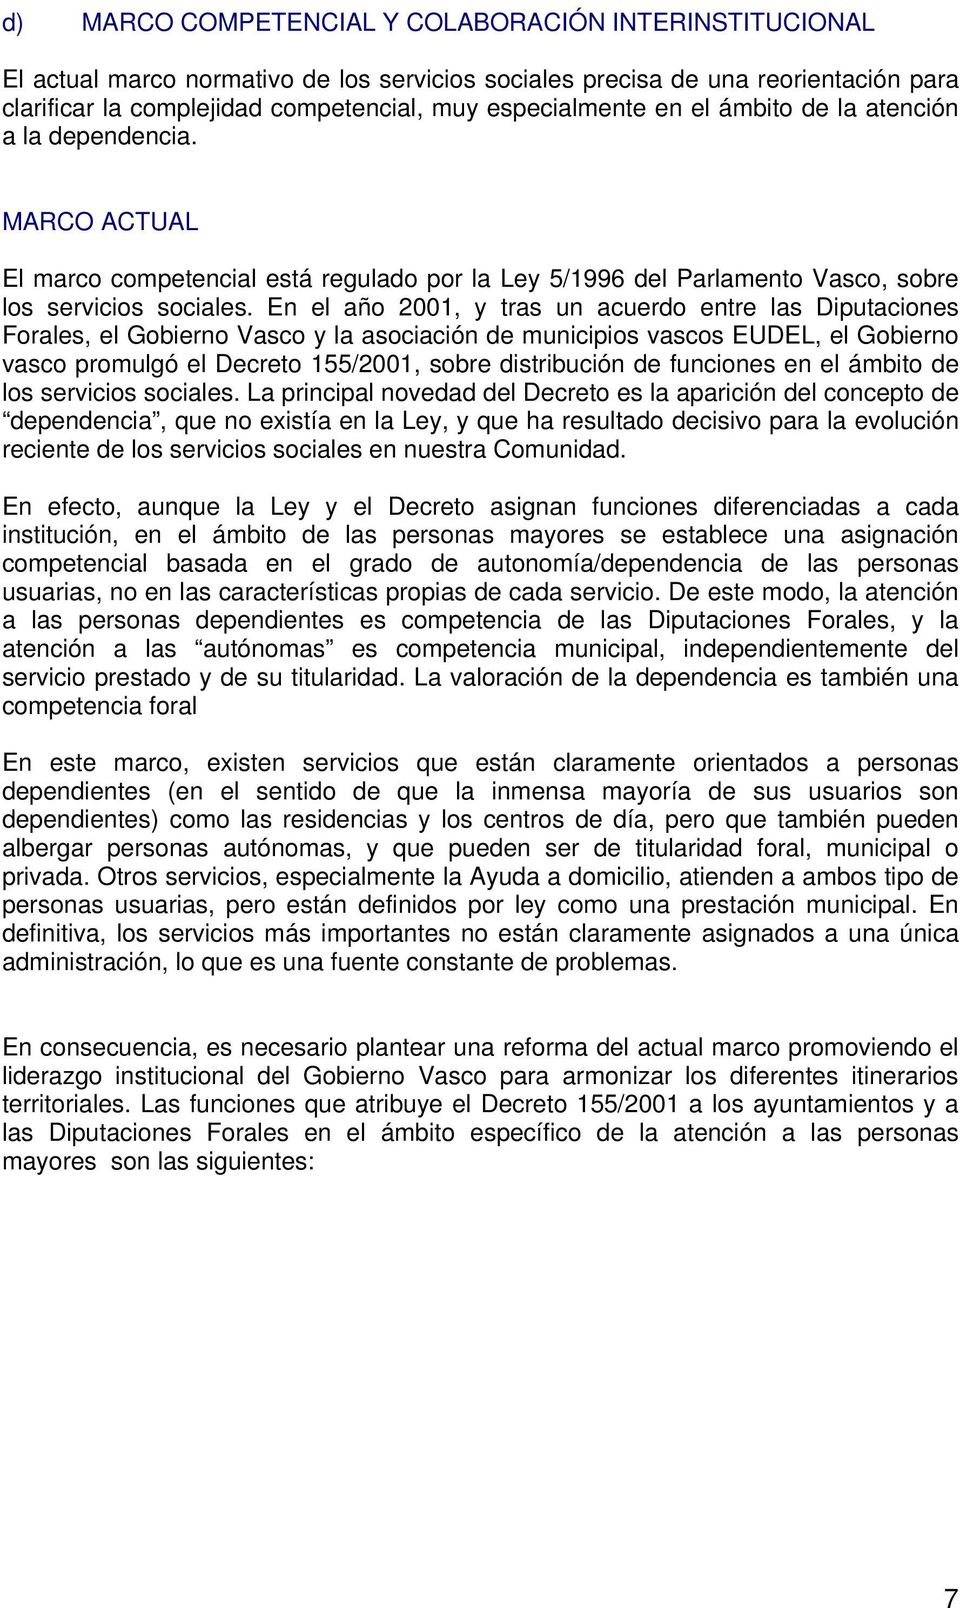 En el año 2001, y tras un acuerdo entre las Diputaciones Forales, el Gobierno Vasco y la asociación de municipios vascos EUDEL, el Gobierno vasco promulgó el Decreto 155/2001, sobre distribución de